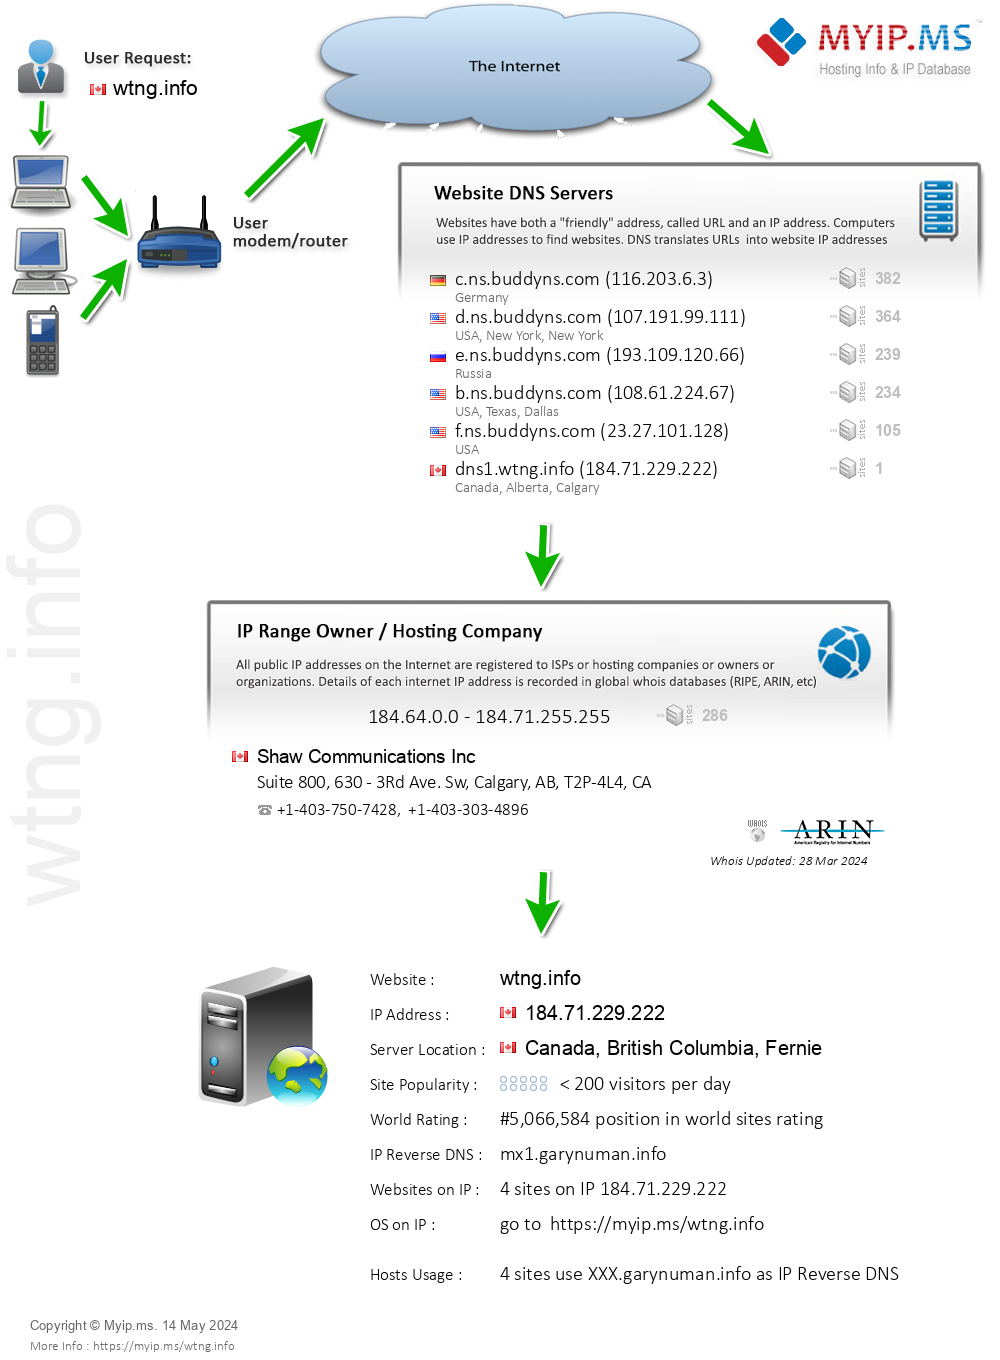 Wtng.info - Website Hosting Visual IP Diagram